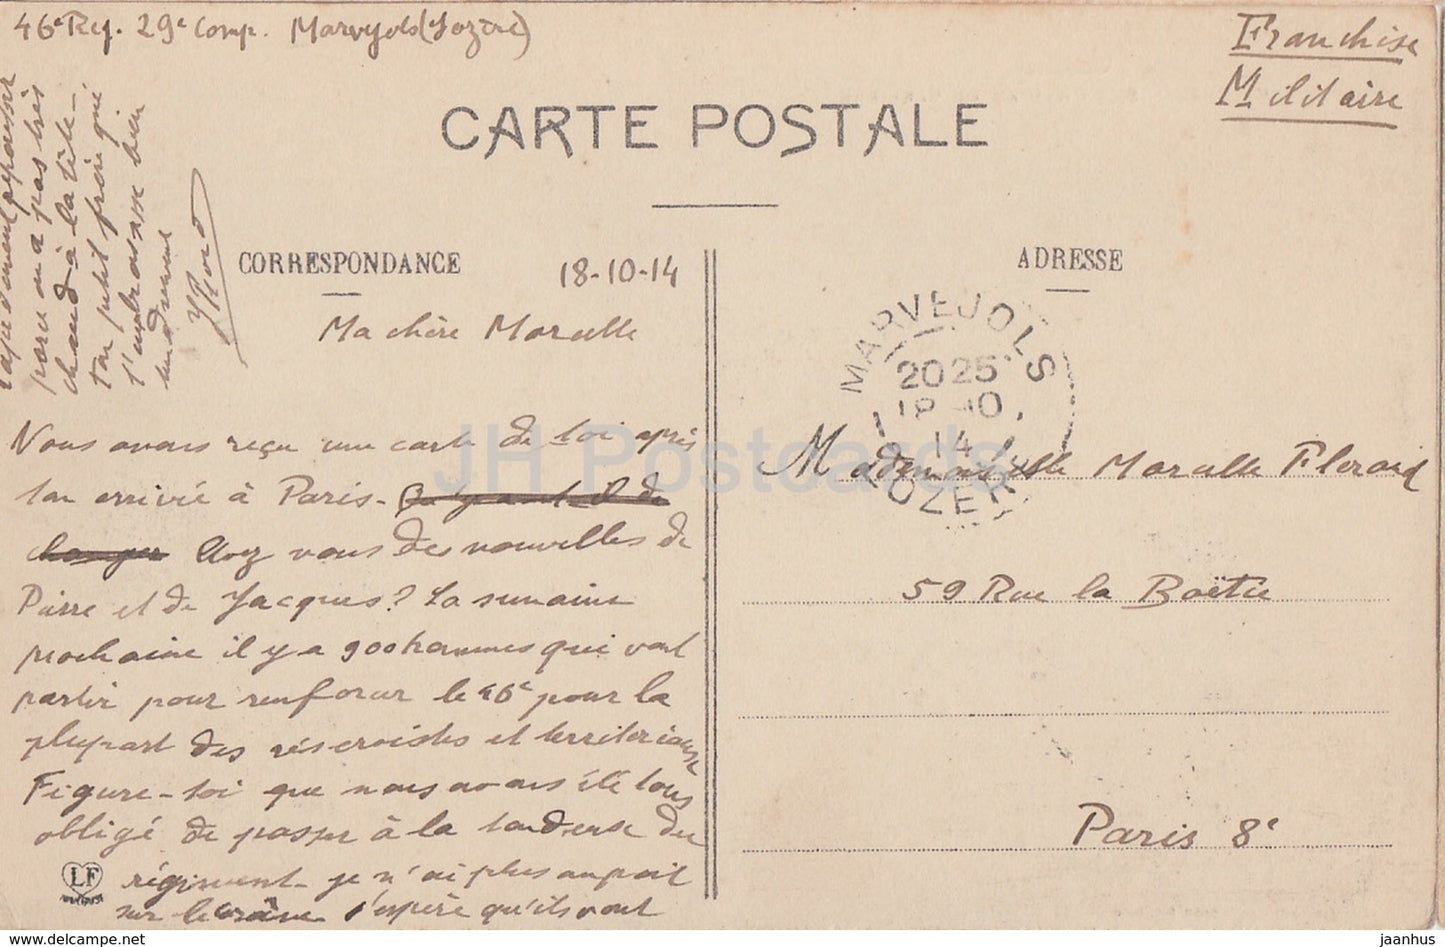 La Lozère - Marvejols - Château de Carriere - château - 609 - carte postale ancienne - 1914 - France - occasion